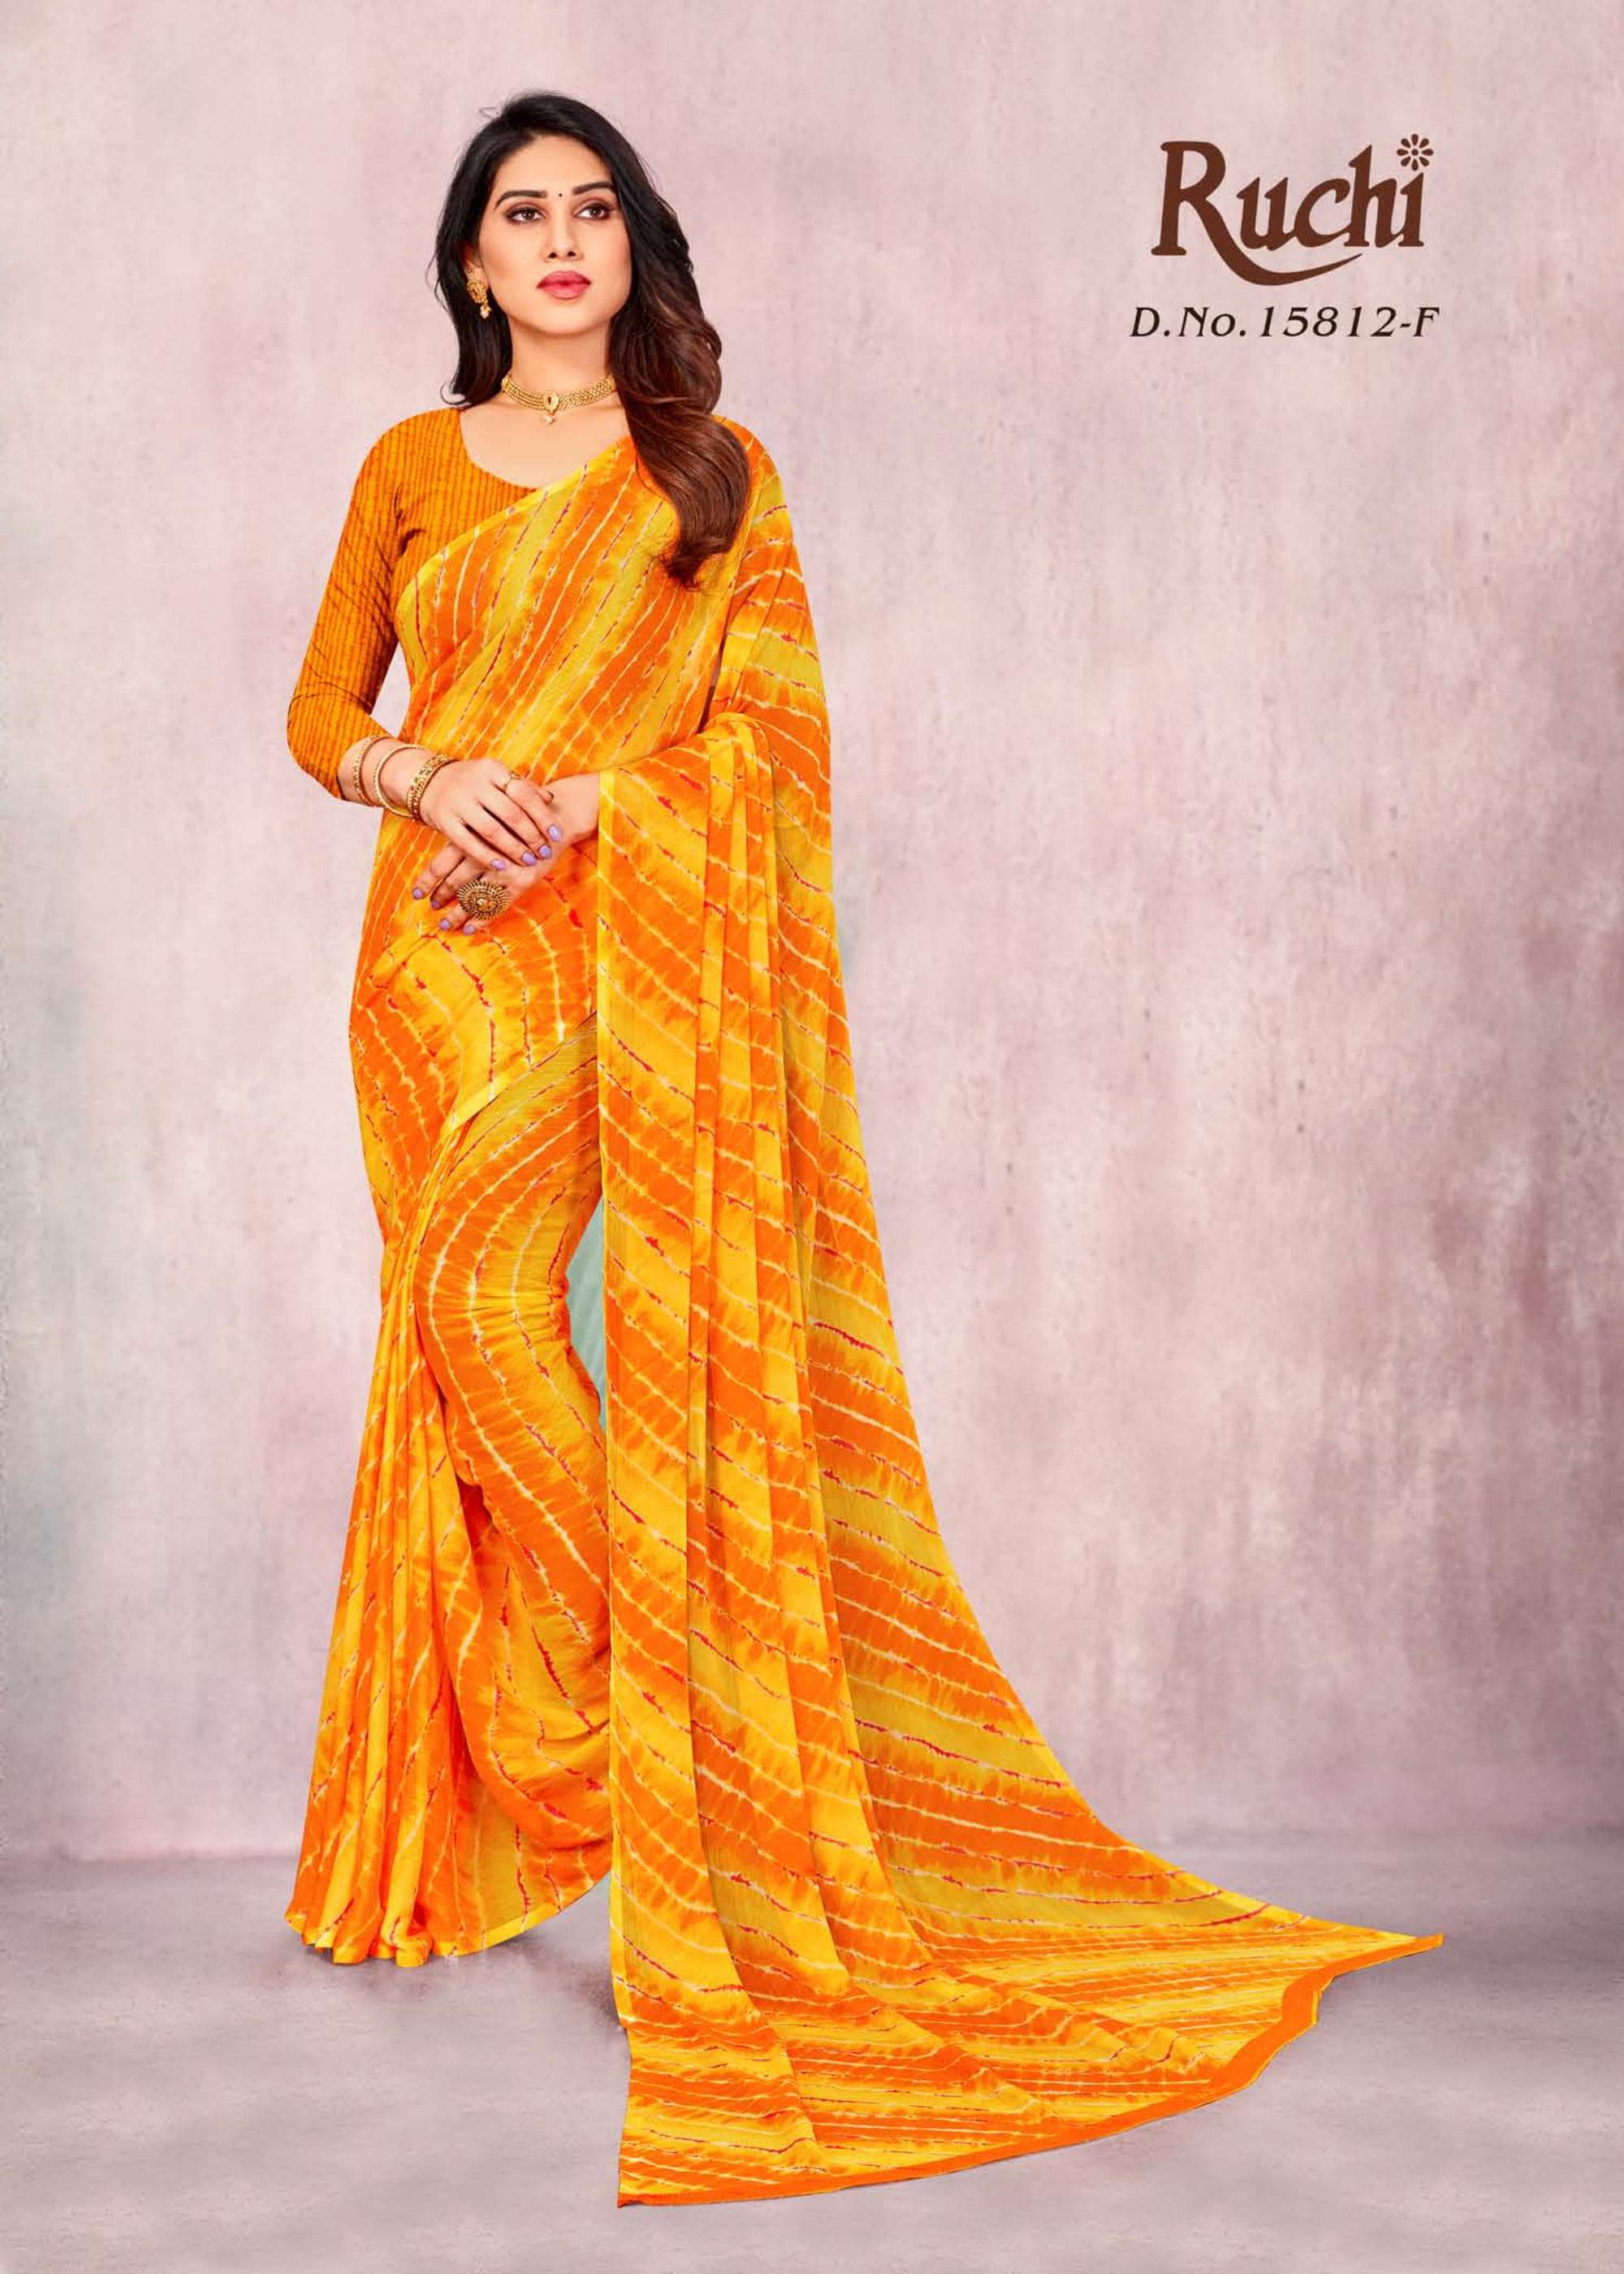 ruchi 15812 star chiffon printed lehriya special fancy sarees